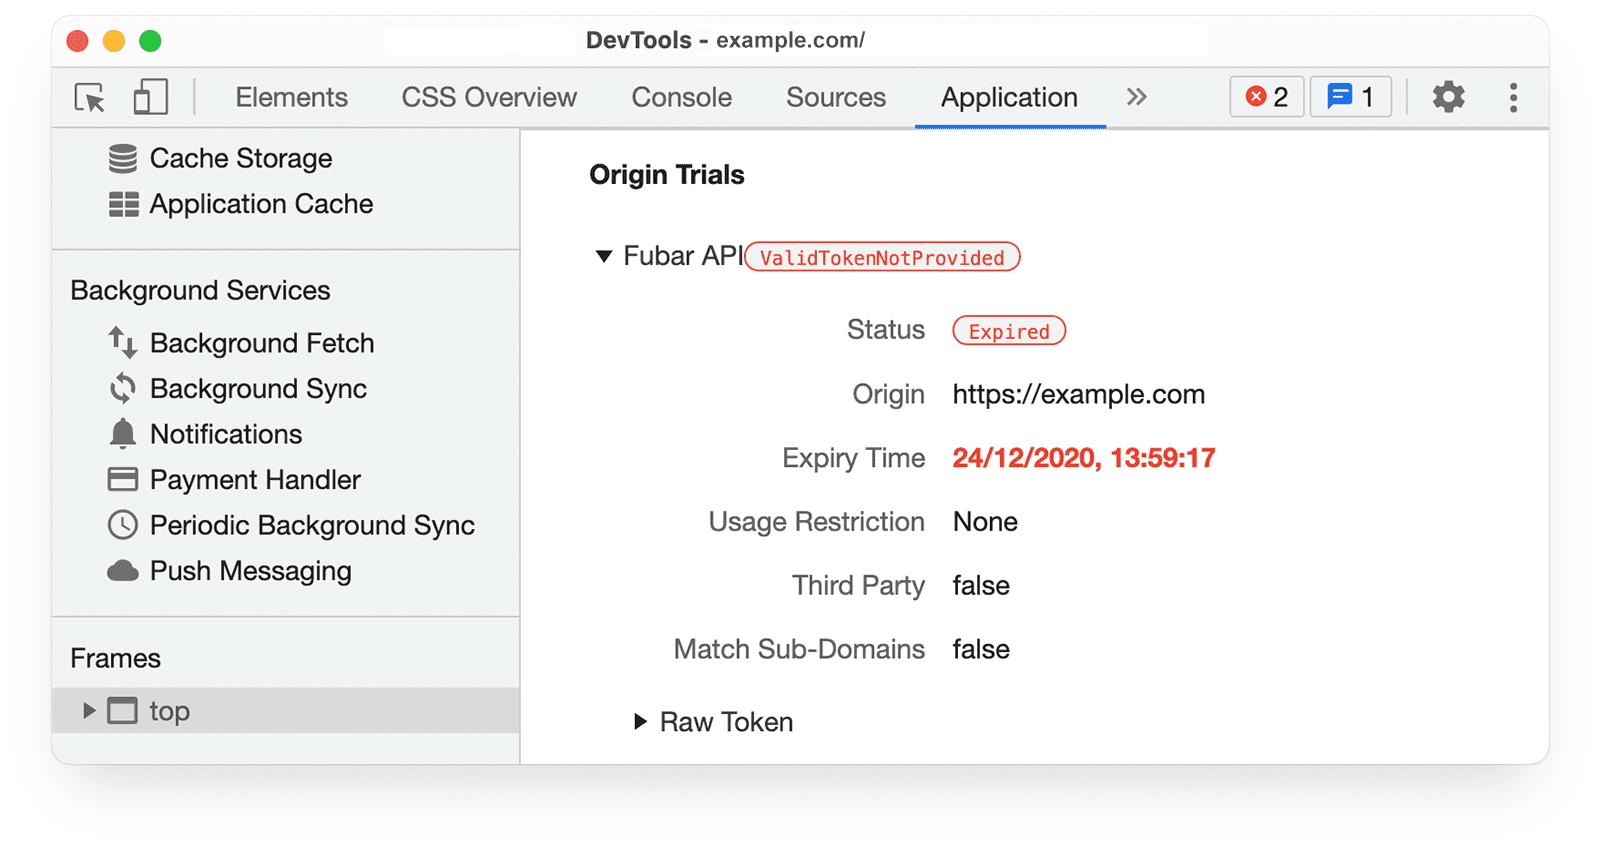 Dịch vụ Công cụ của Chrome cho nhà phát triển 
thông tin về các bản dùng thử theo nguyên gốc trong bảng điều khiển Ứng dụng cho thấy mã thông báo đã hết hạn